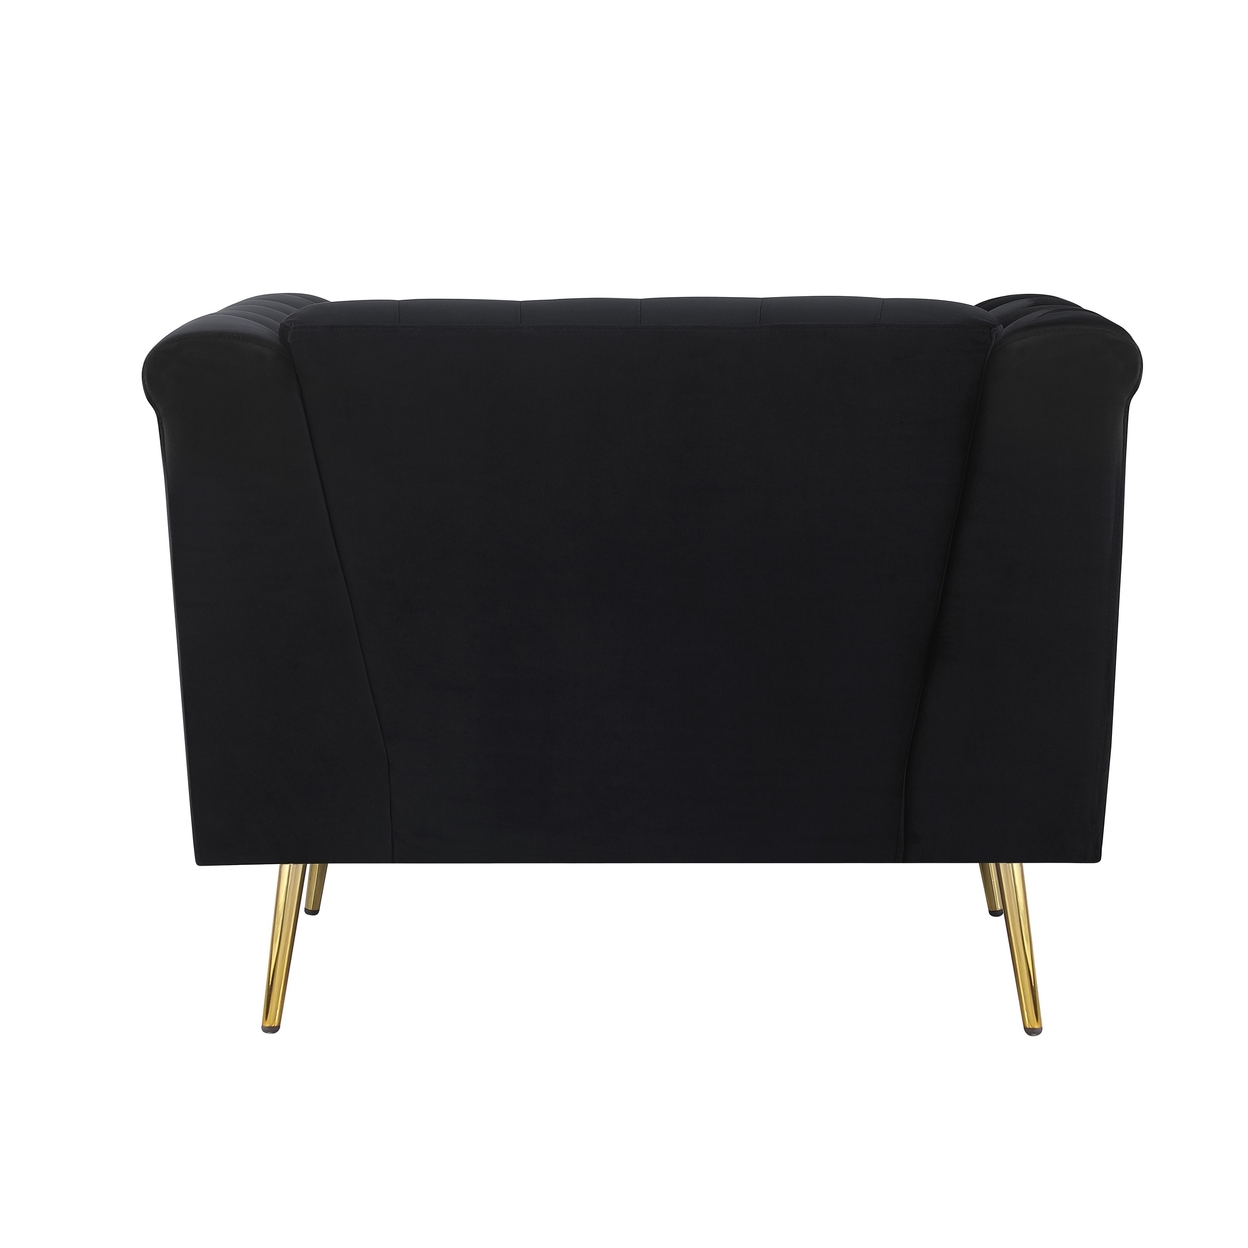 Ato 40 Inch Chesterfield Chair, Gold Trim, Tufted Black Velvet Upholstery- Saltoro Sherpi